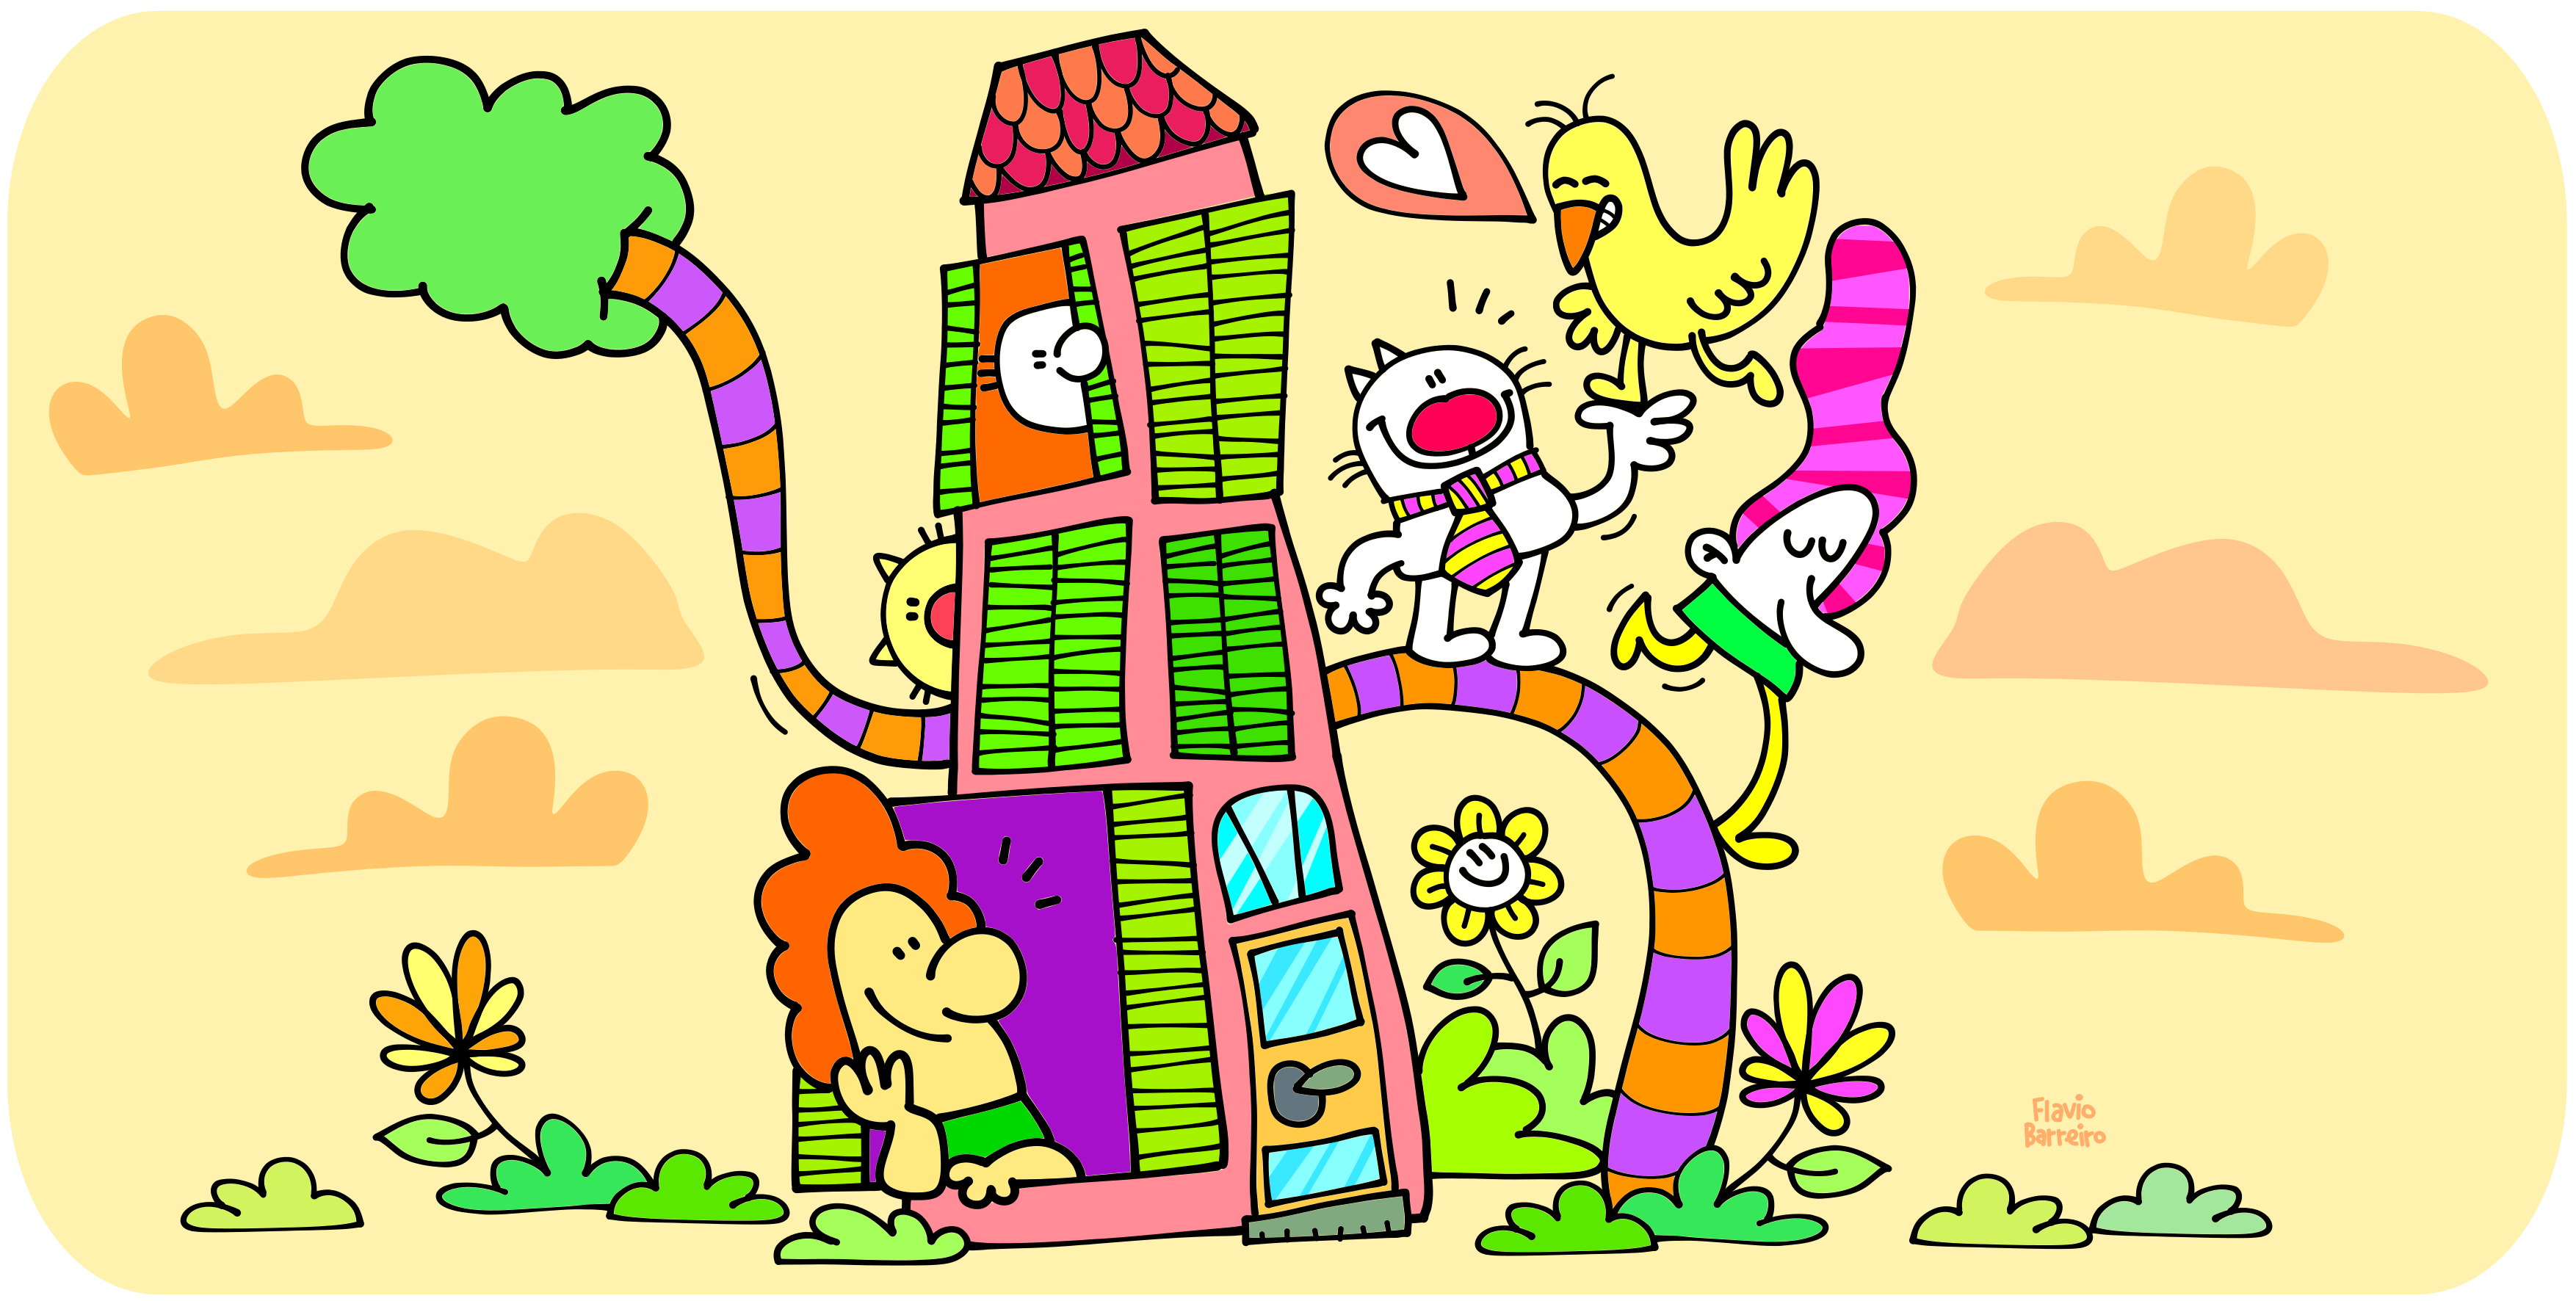 37601Illustrazioni buffe e colorate per l’infanzia